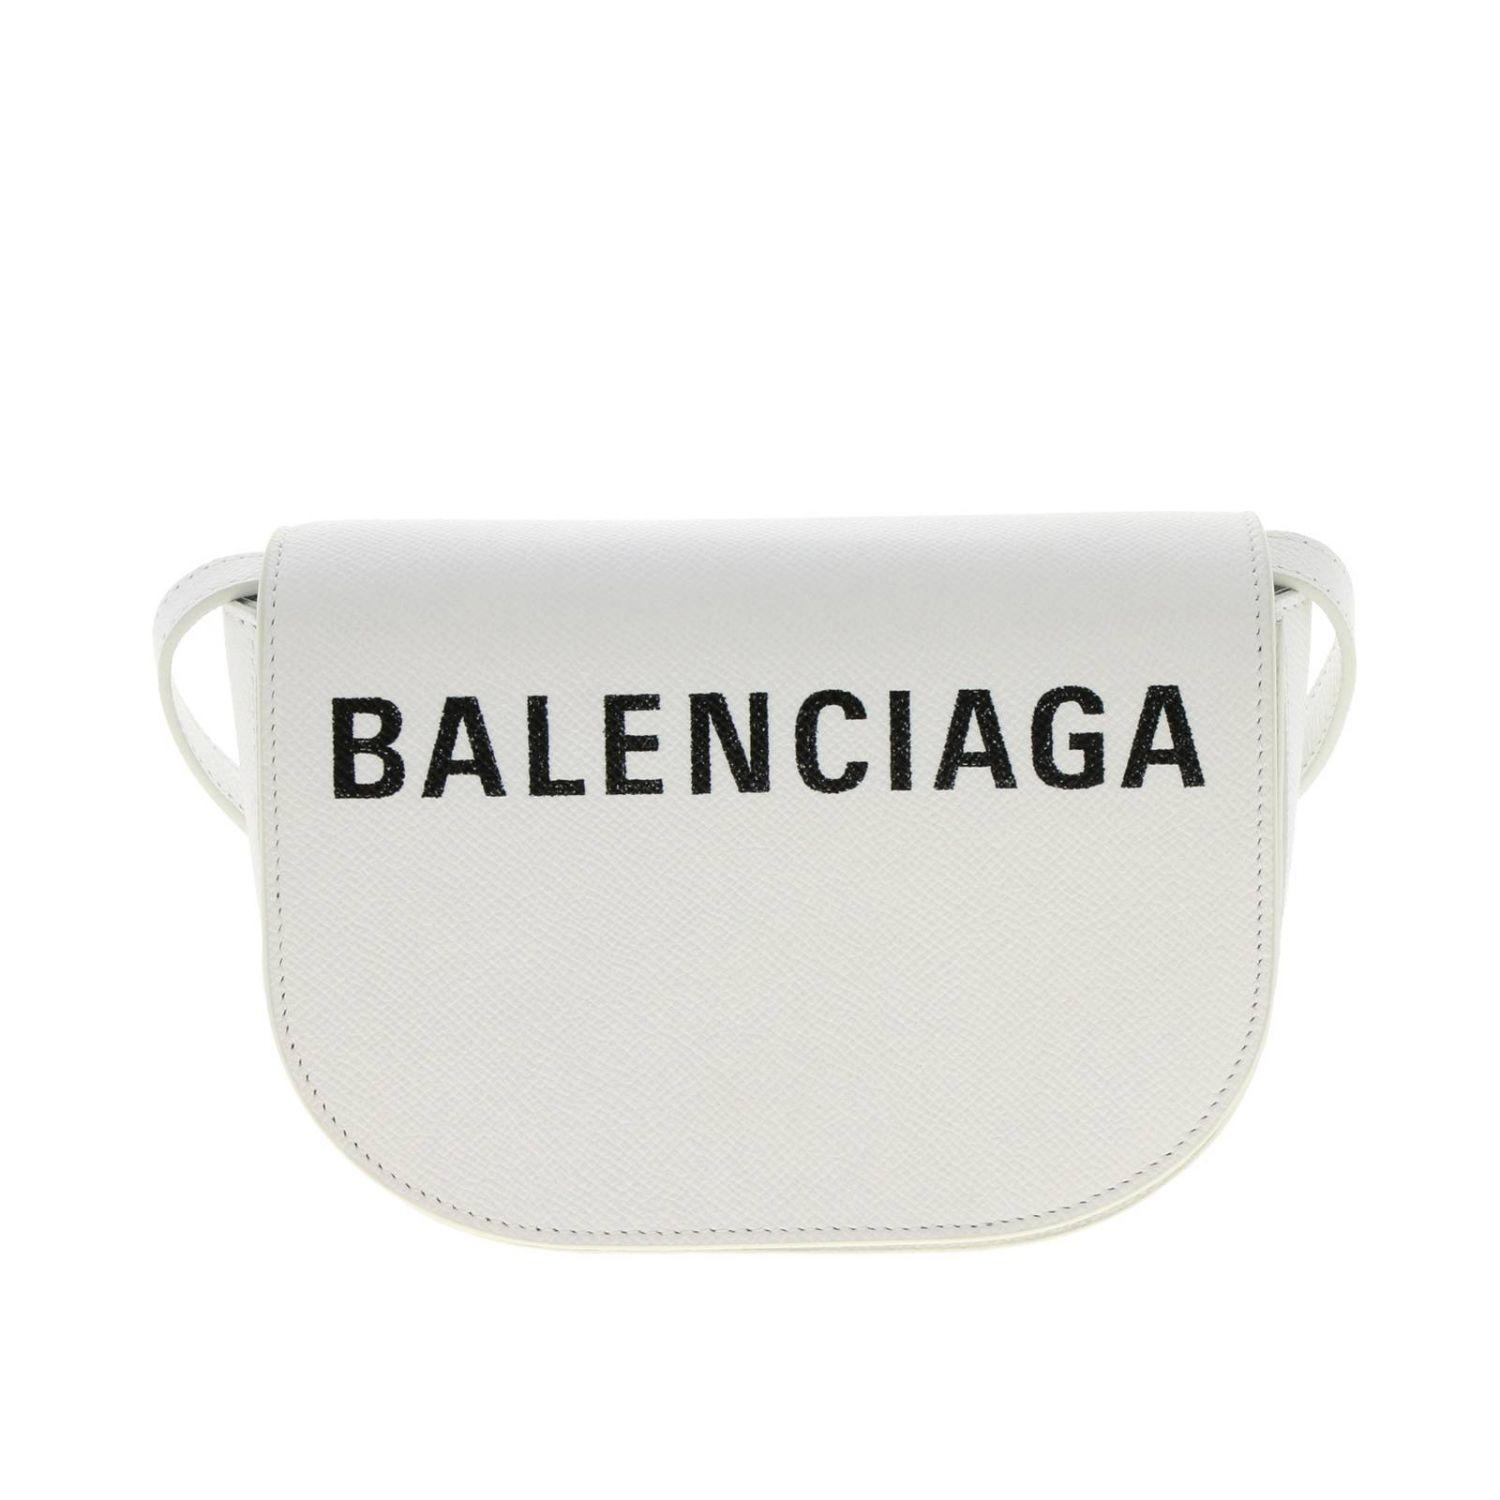 Balenciaga Ville Day Extra Small Aj Crossbody Bag in White